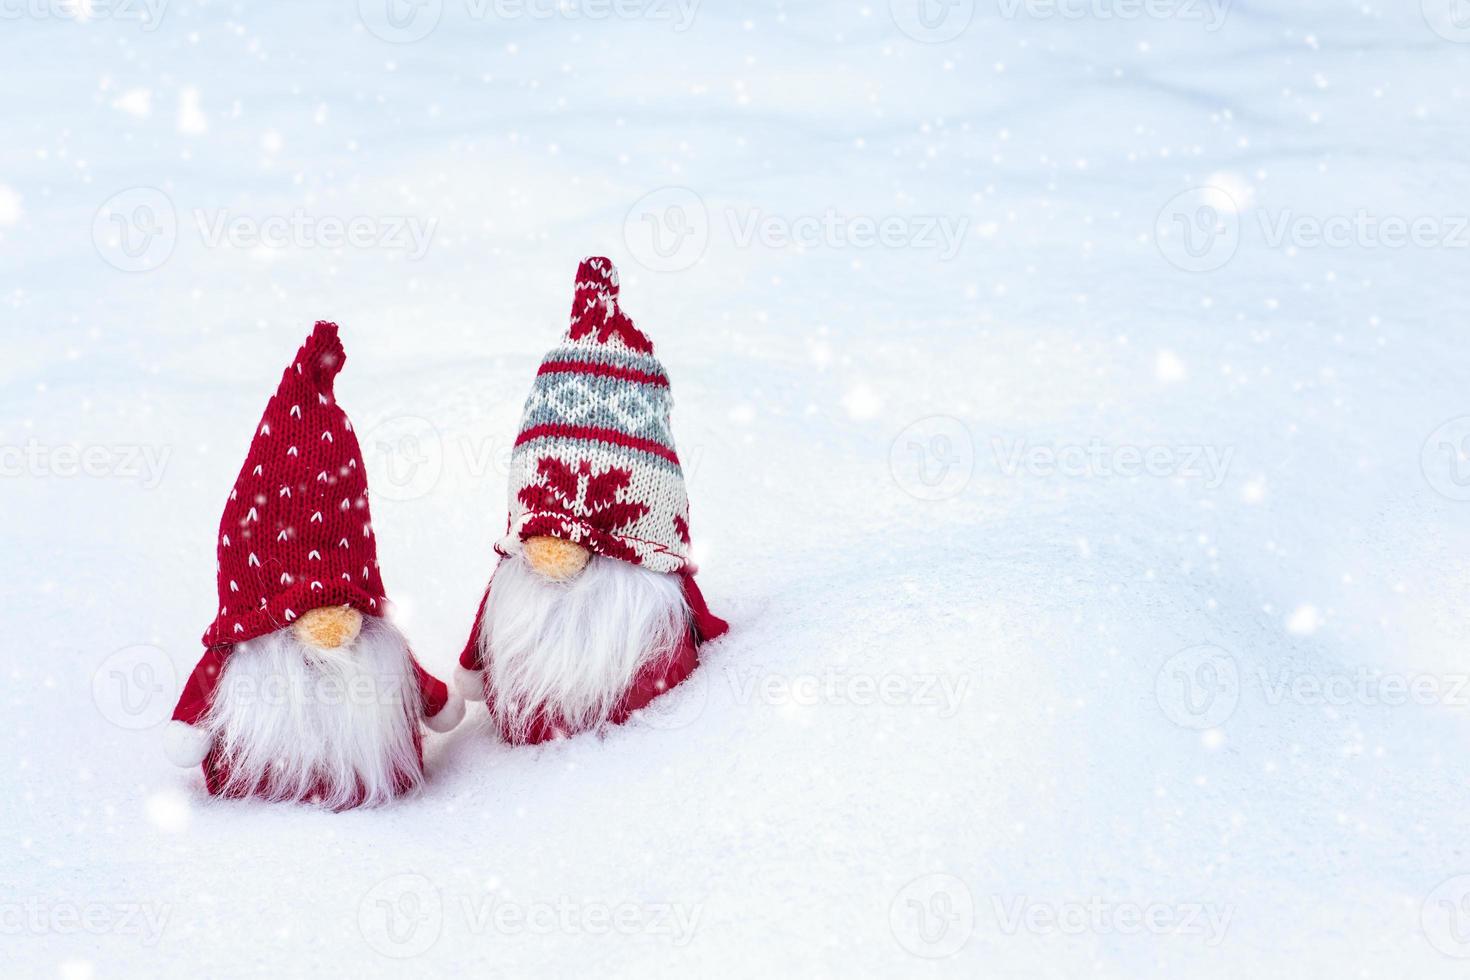 tarjeta de vacaciones de navidad lindos gnomos escandinavos con sombrero rojo y barba blanca en el bosque de invierno nevado cuento de hadas nevadas invierno hola diciembre, enero, concepto de febrero feliz año nuevo, navidad foto